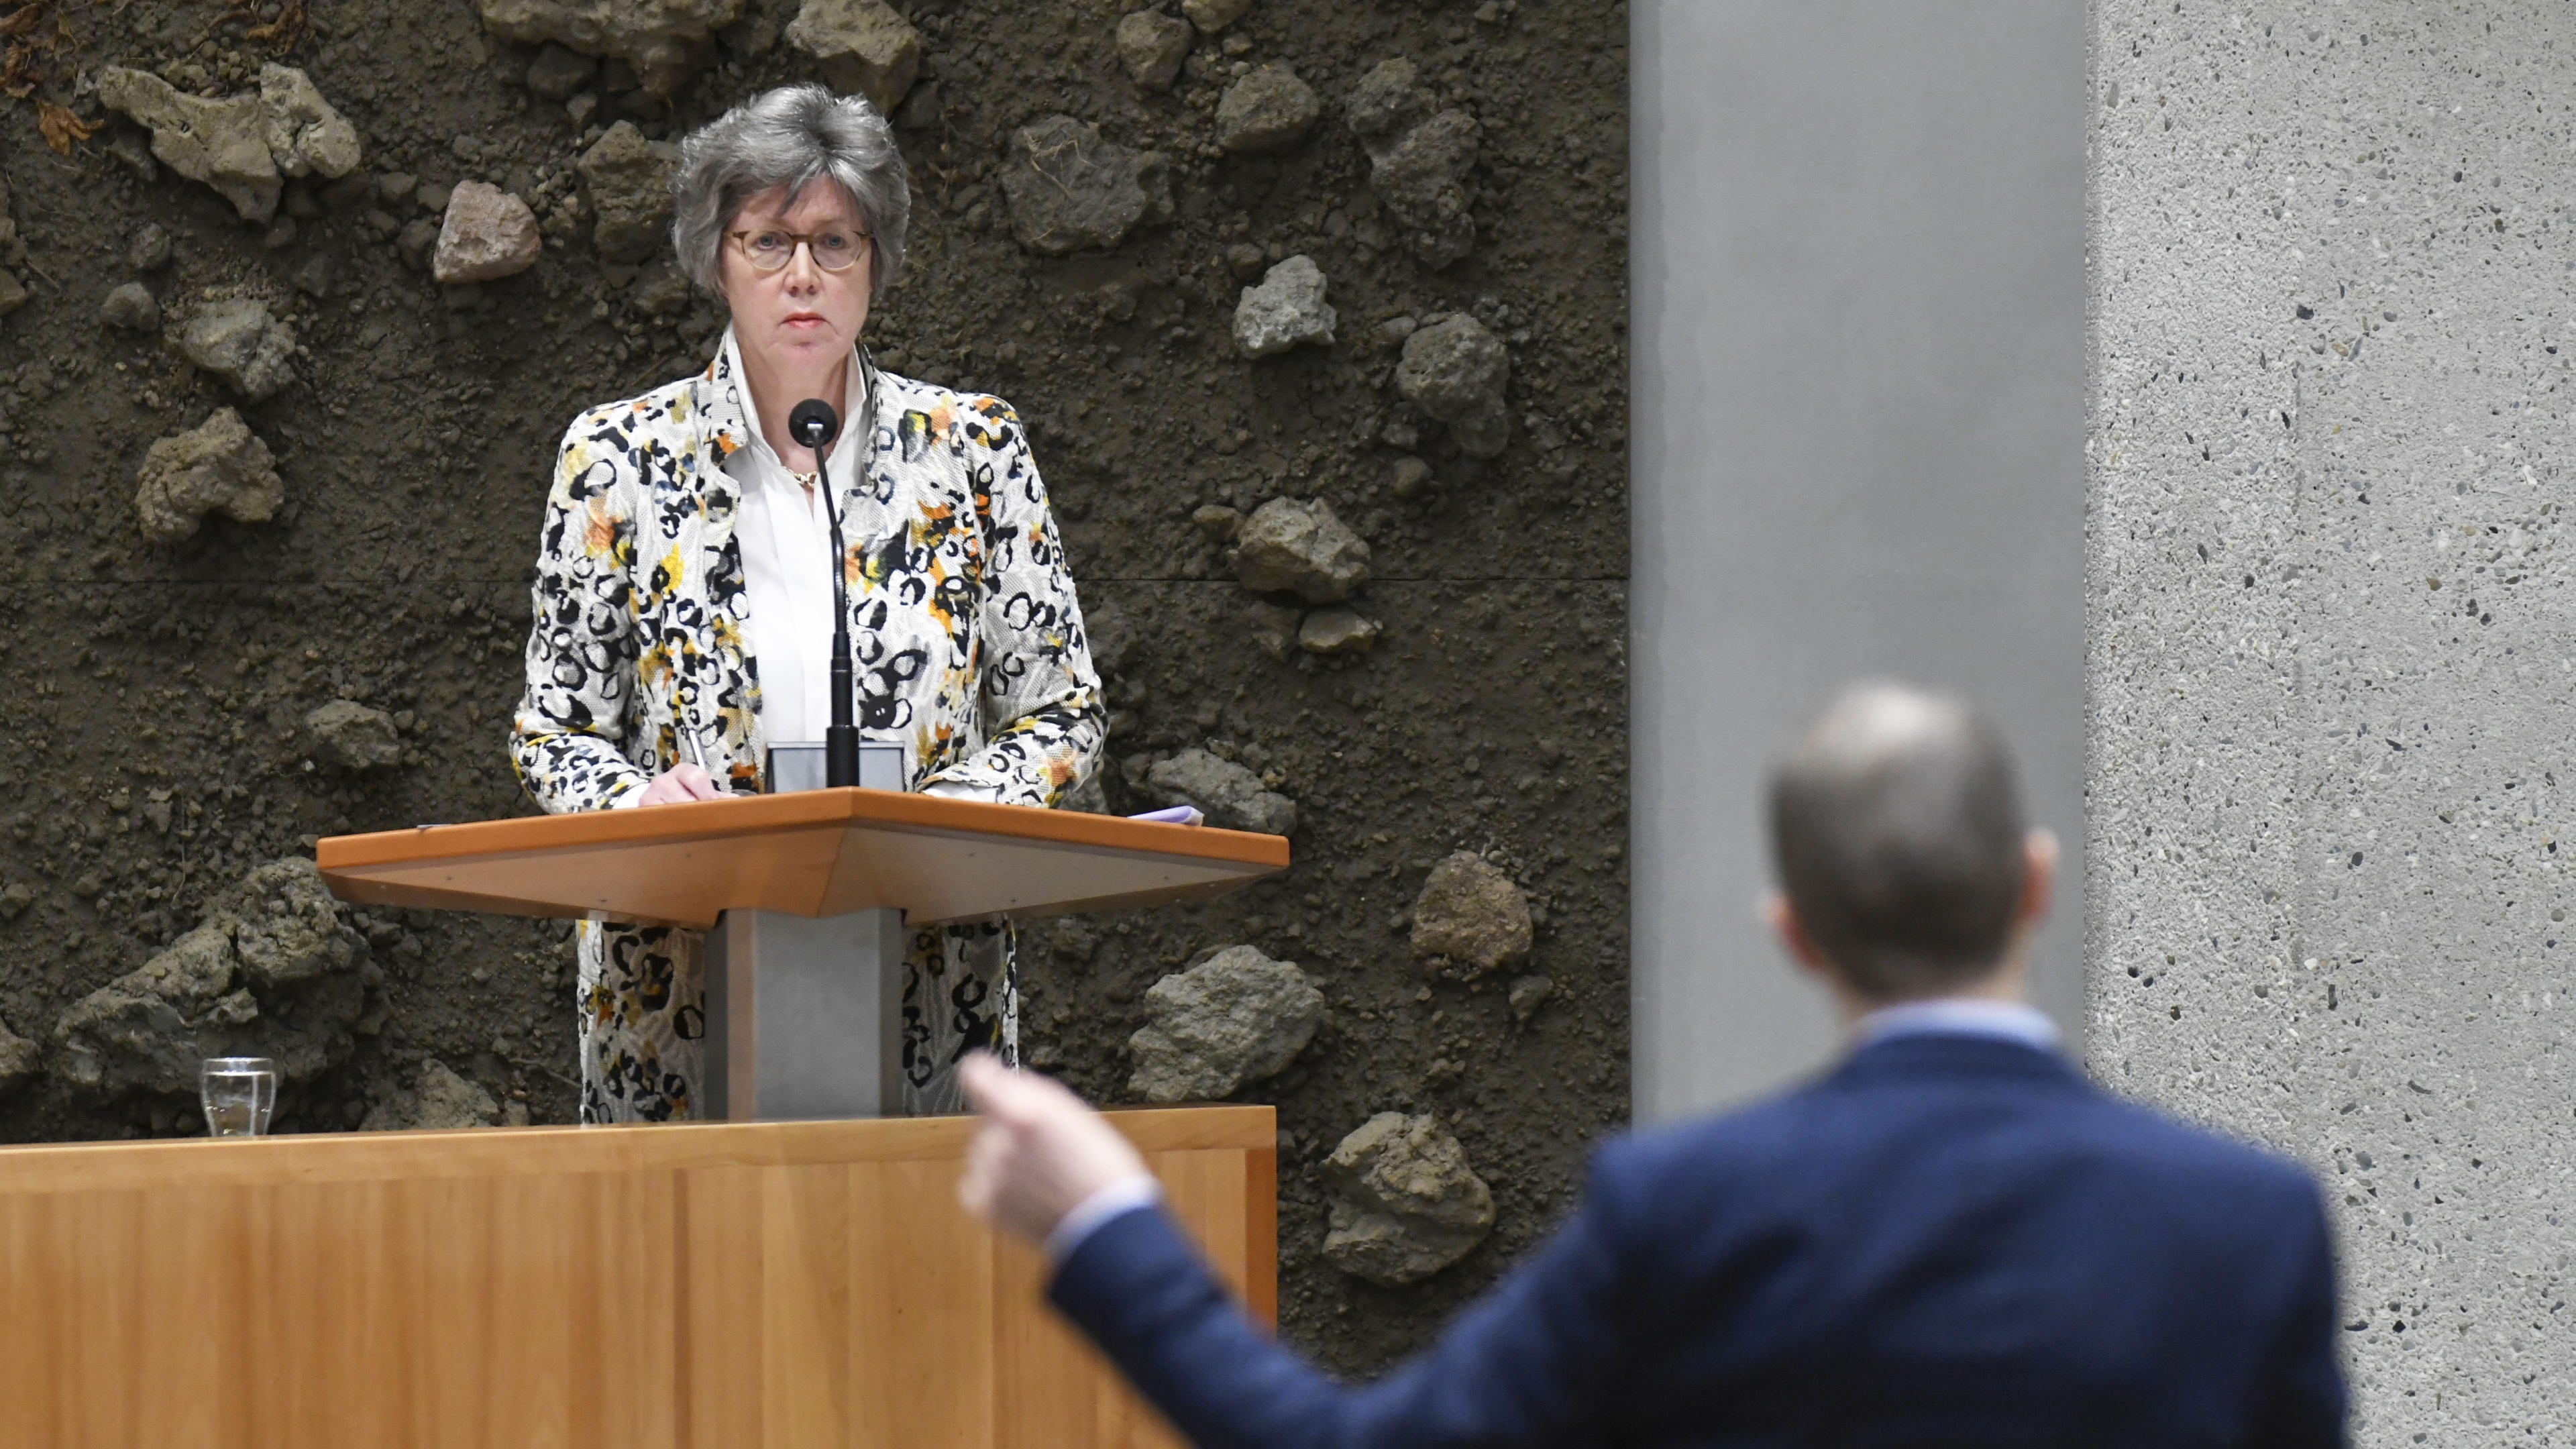 CDA'er Van den Berg steunt De Jonge, oppositie steigert: 'Schande voor Tweede Kamer'